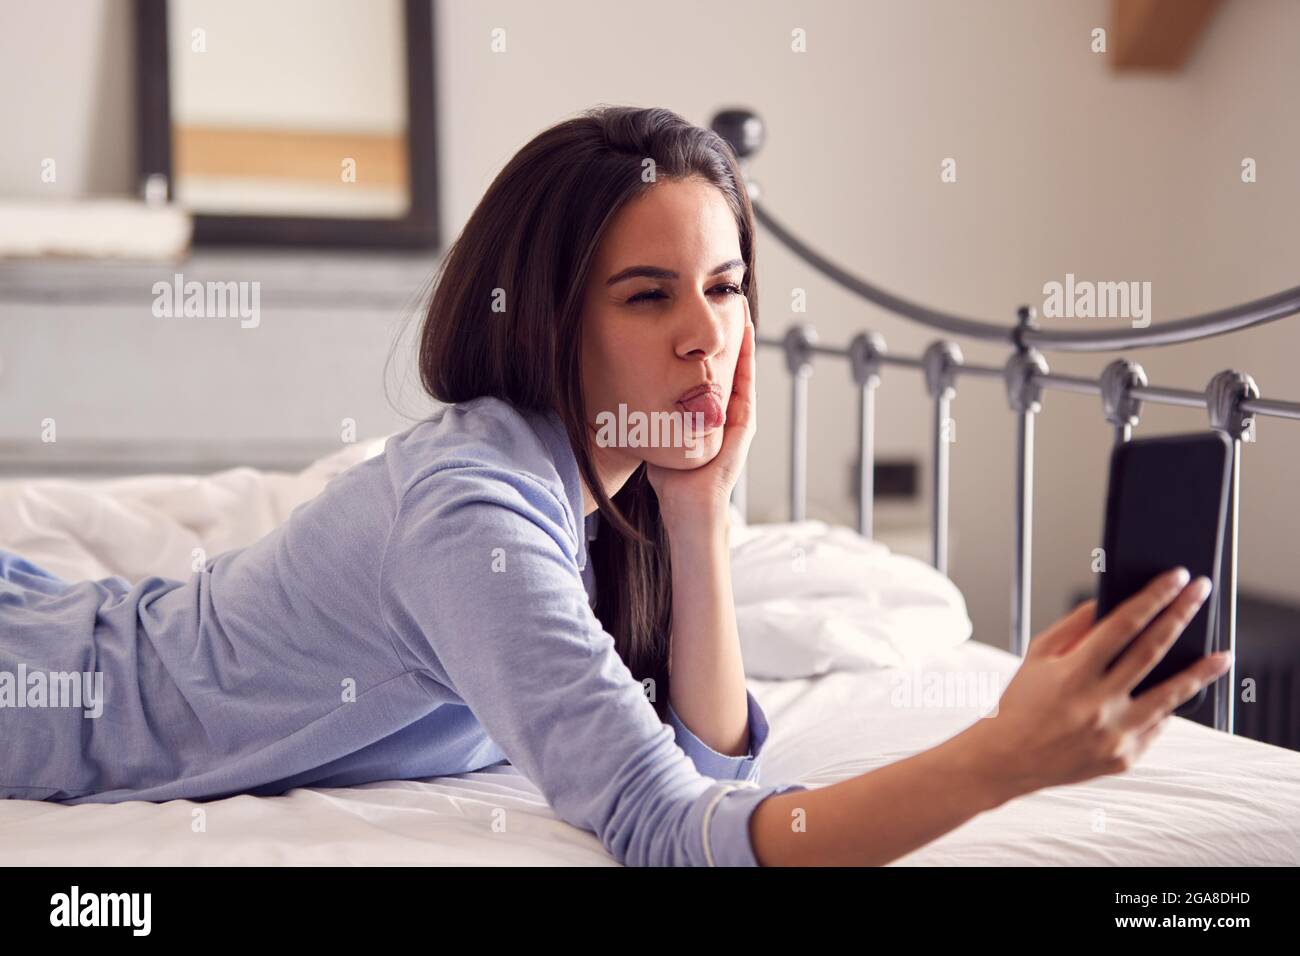 Femme portant un pyjama tirant sur le visage tout en prenant Selfie sur un téléphone portable couché sur le lit Banque D'Images